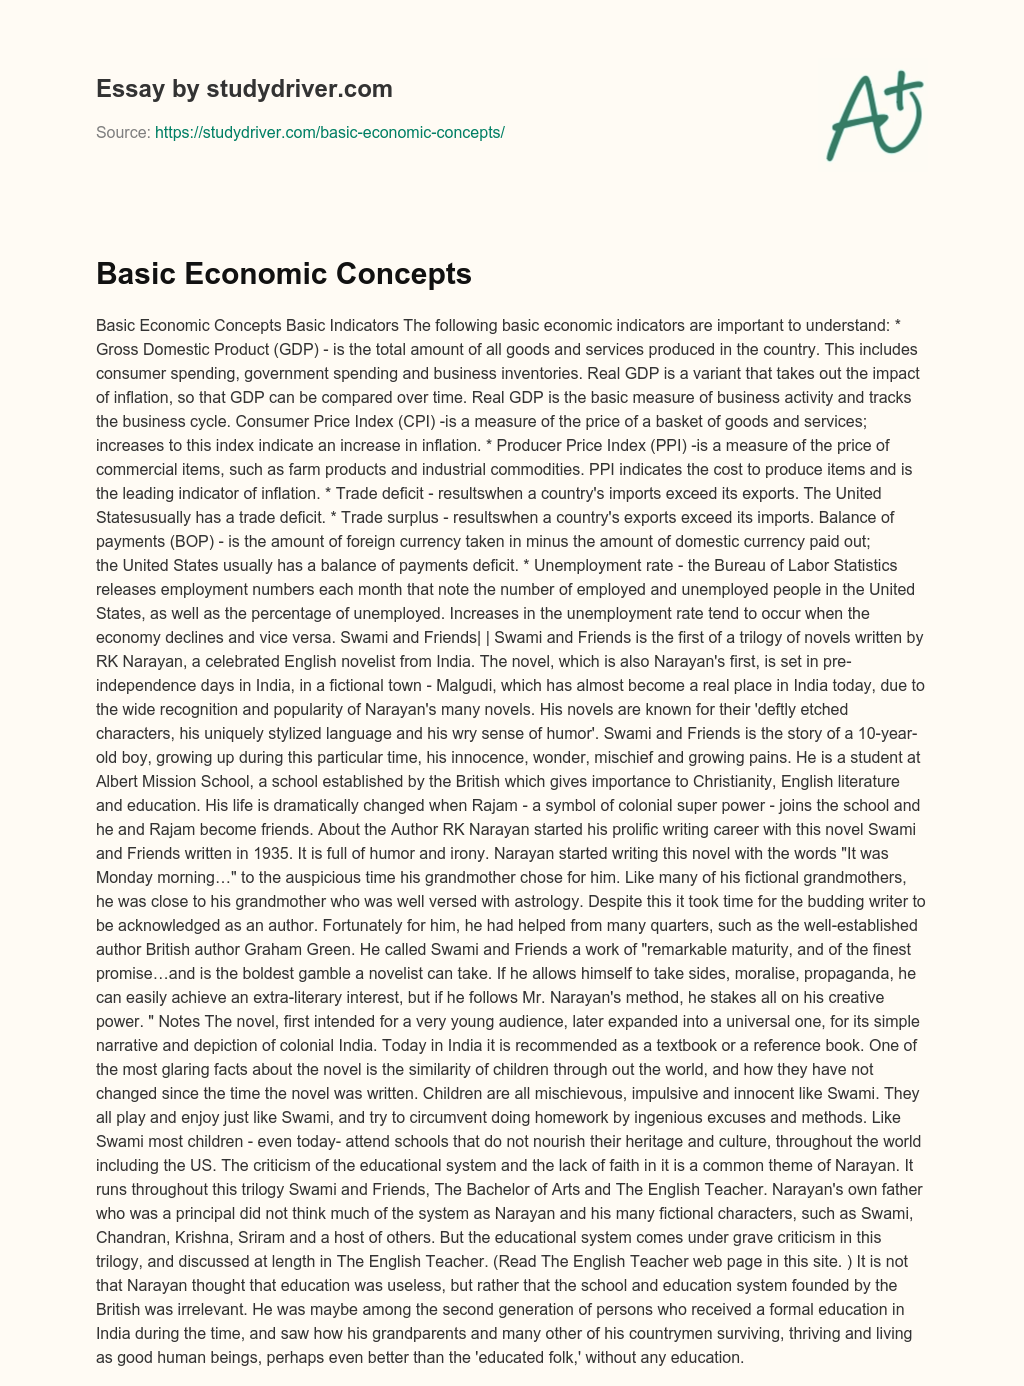 Basic Economic Concepts essay